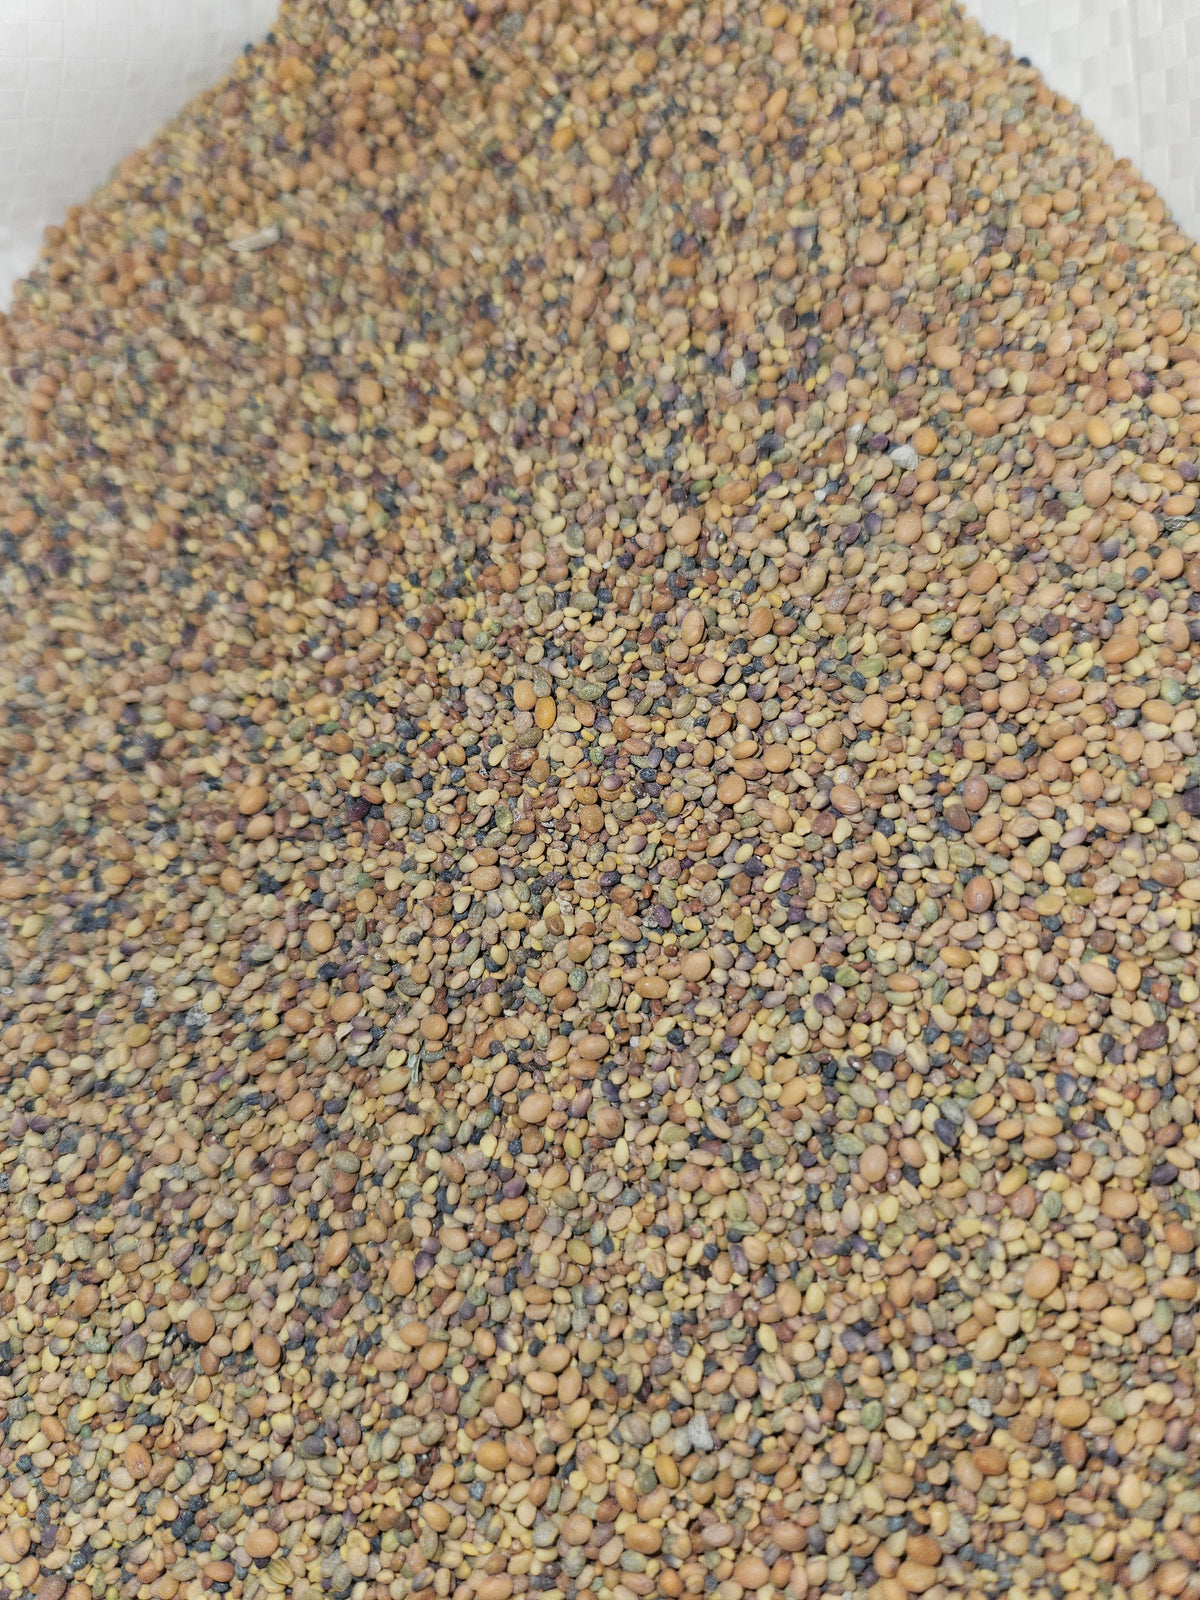 Just Clover Food Plot Seed Mix - Virginia Food Plots | Food Plot Seed